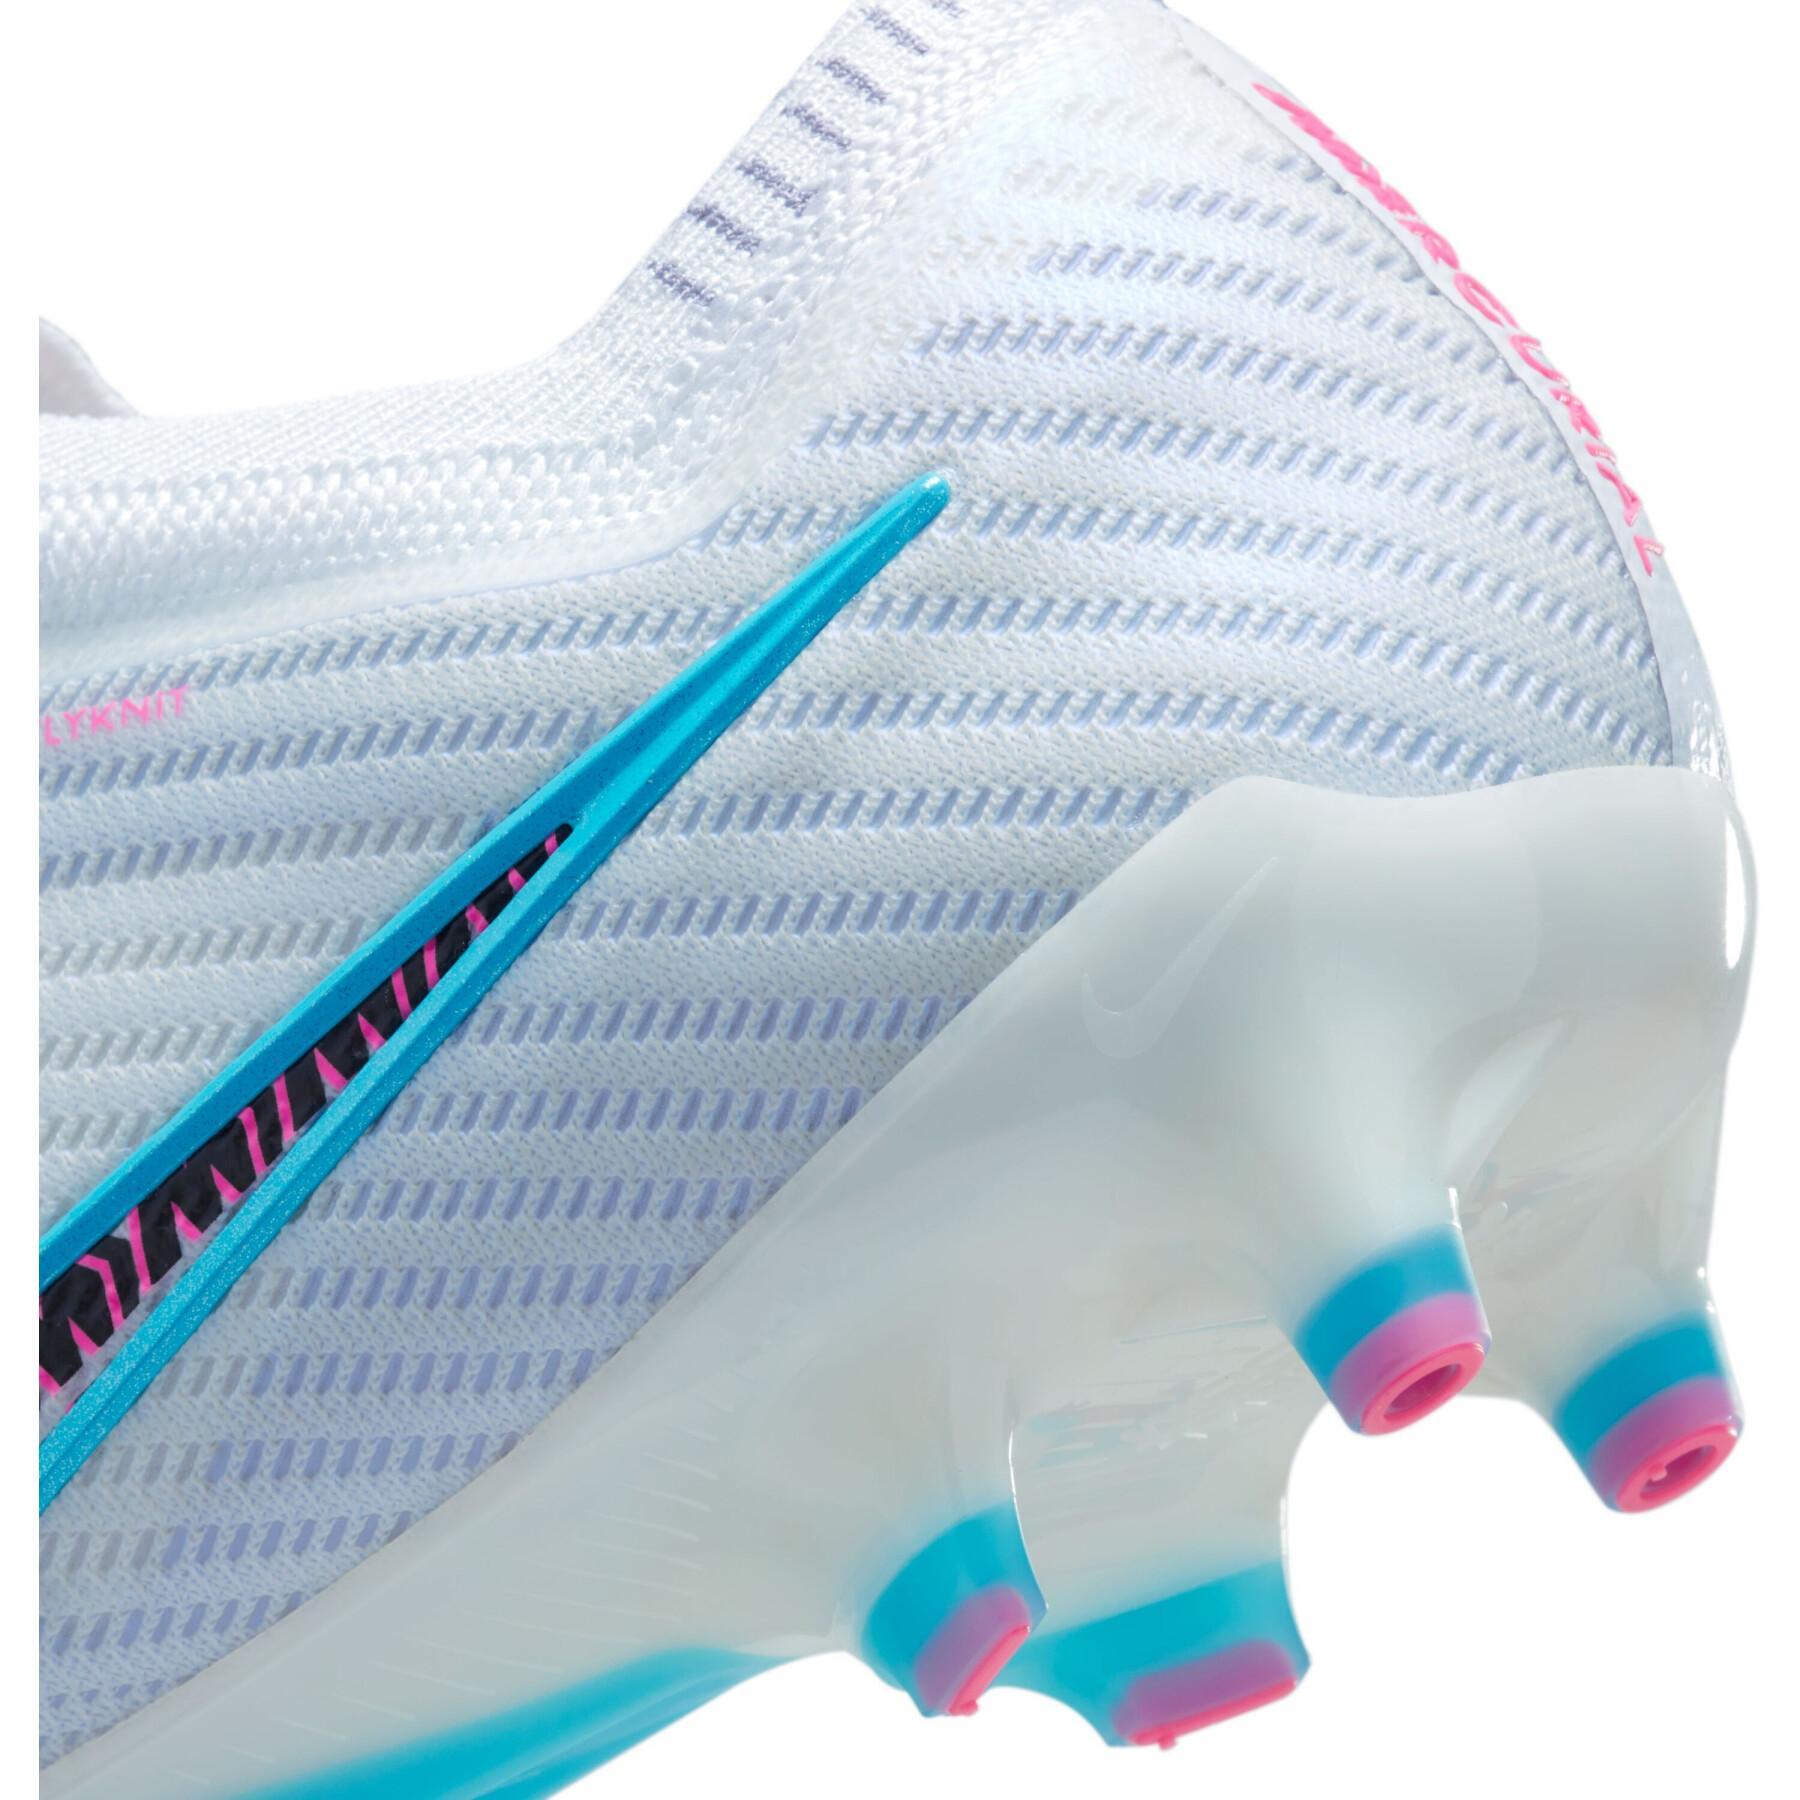 Soccer shoes Nike Zoom Mercurial Vapor 15 Elite AG-Pro – Blast Pack